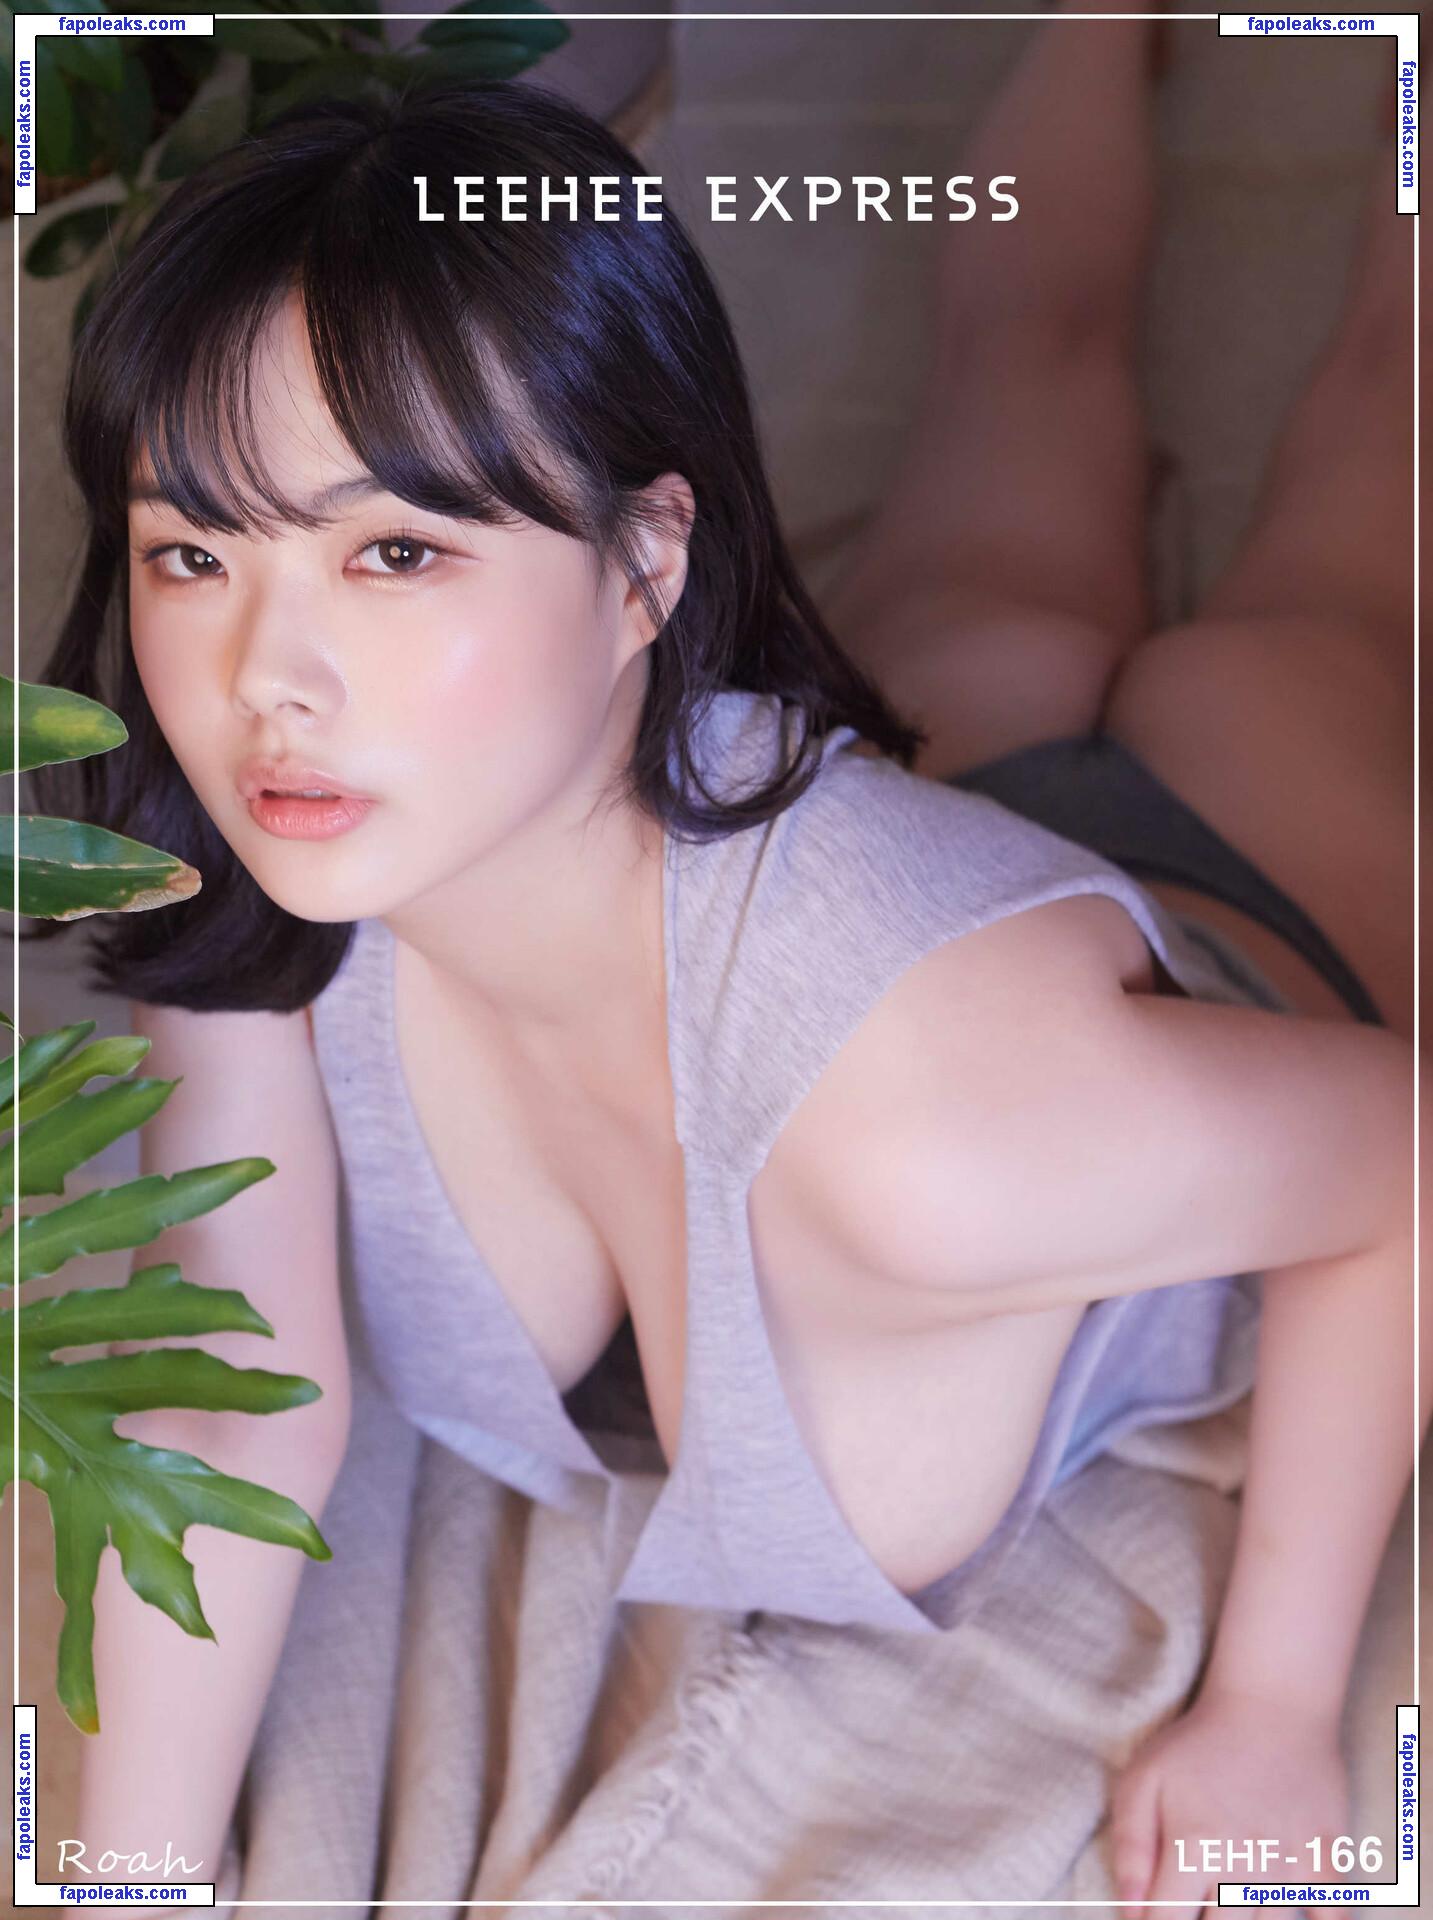 Leehee Roah / 2roo_aa nude photo #0015 from OnlyFans